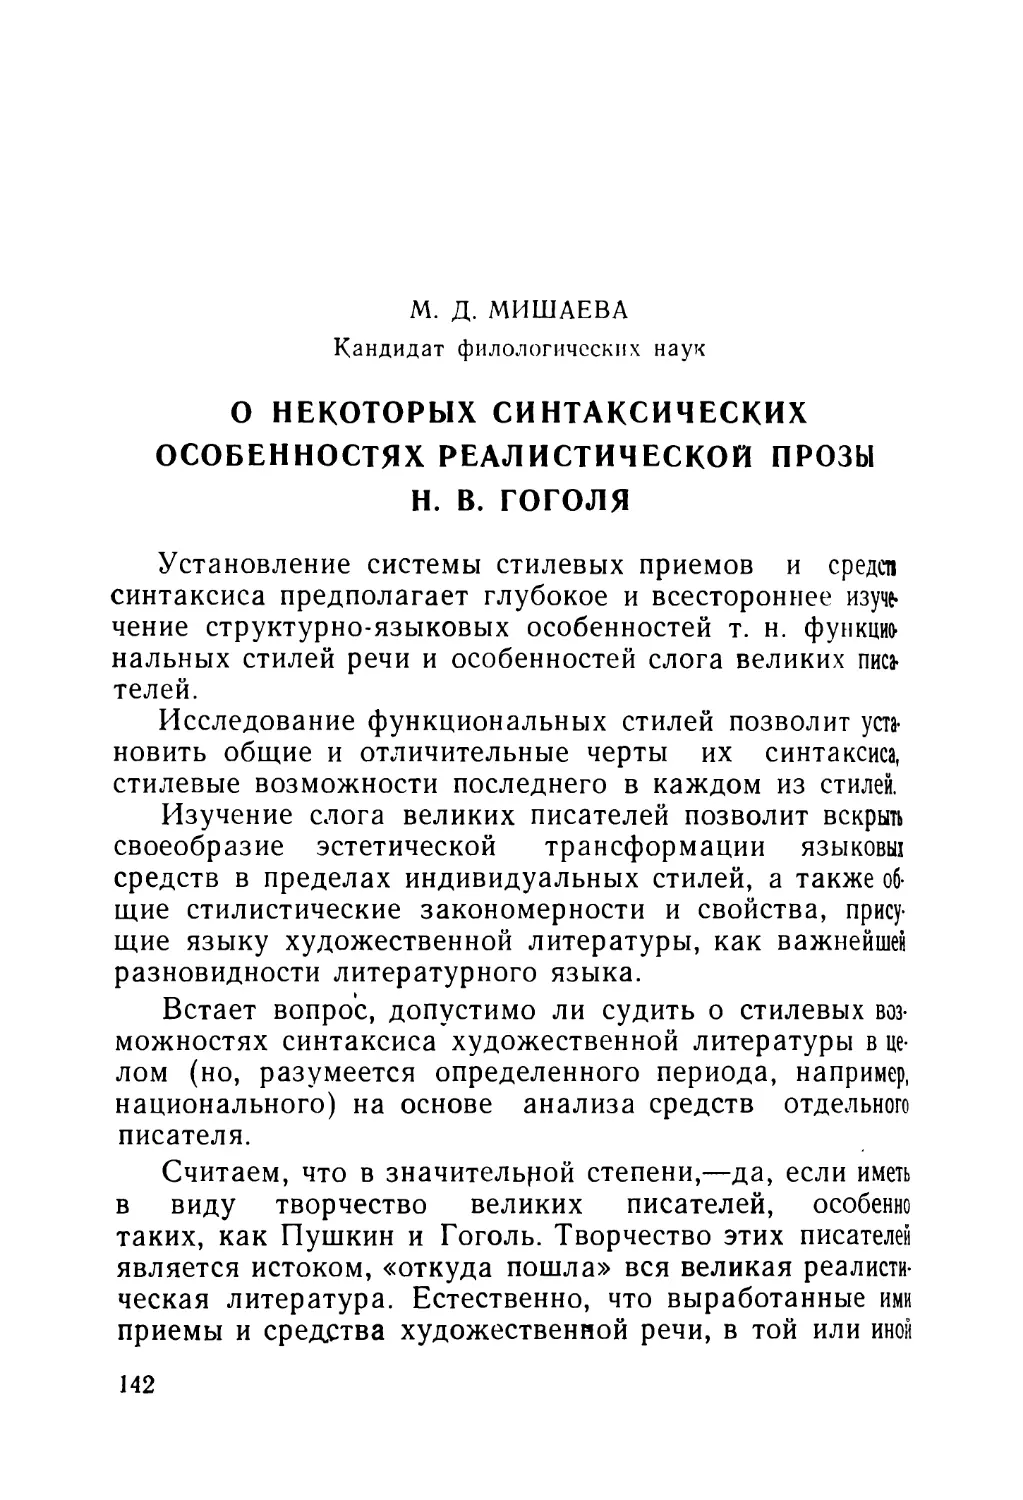 Мишаева М. Д. О некоторых синтаксических особенностях реалистической прозы Н. В. Гоголя